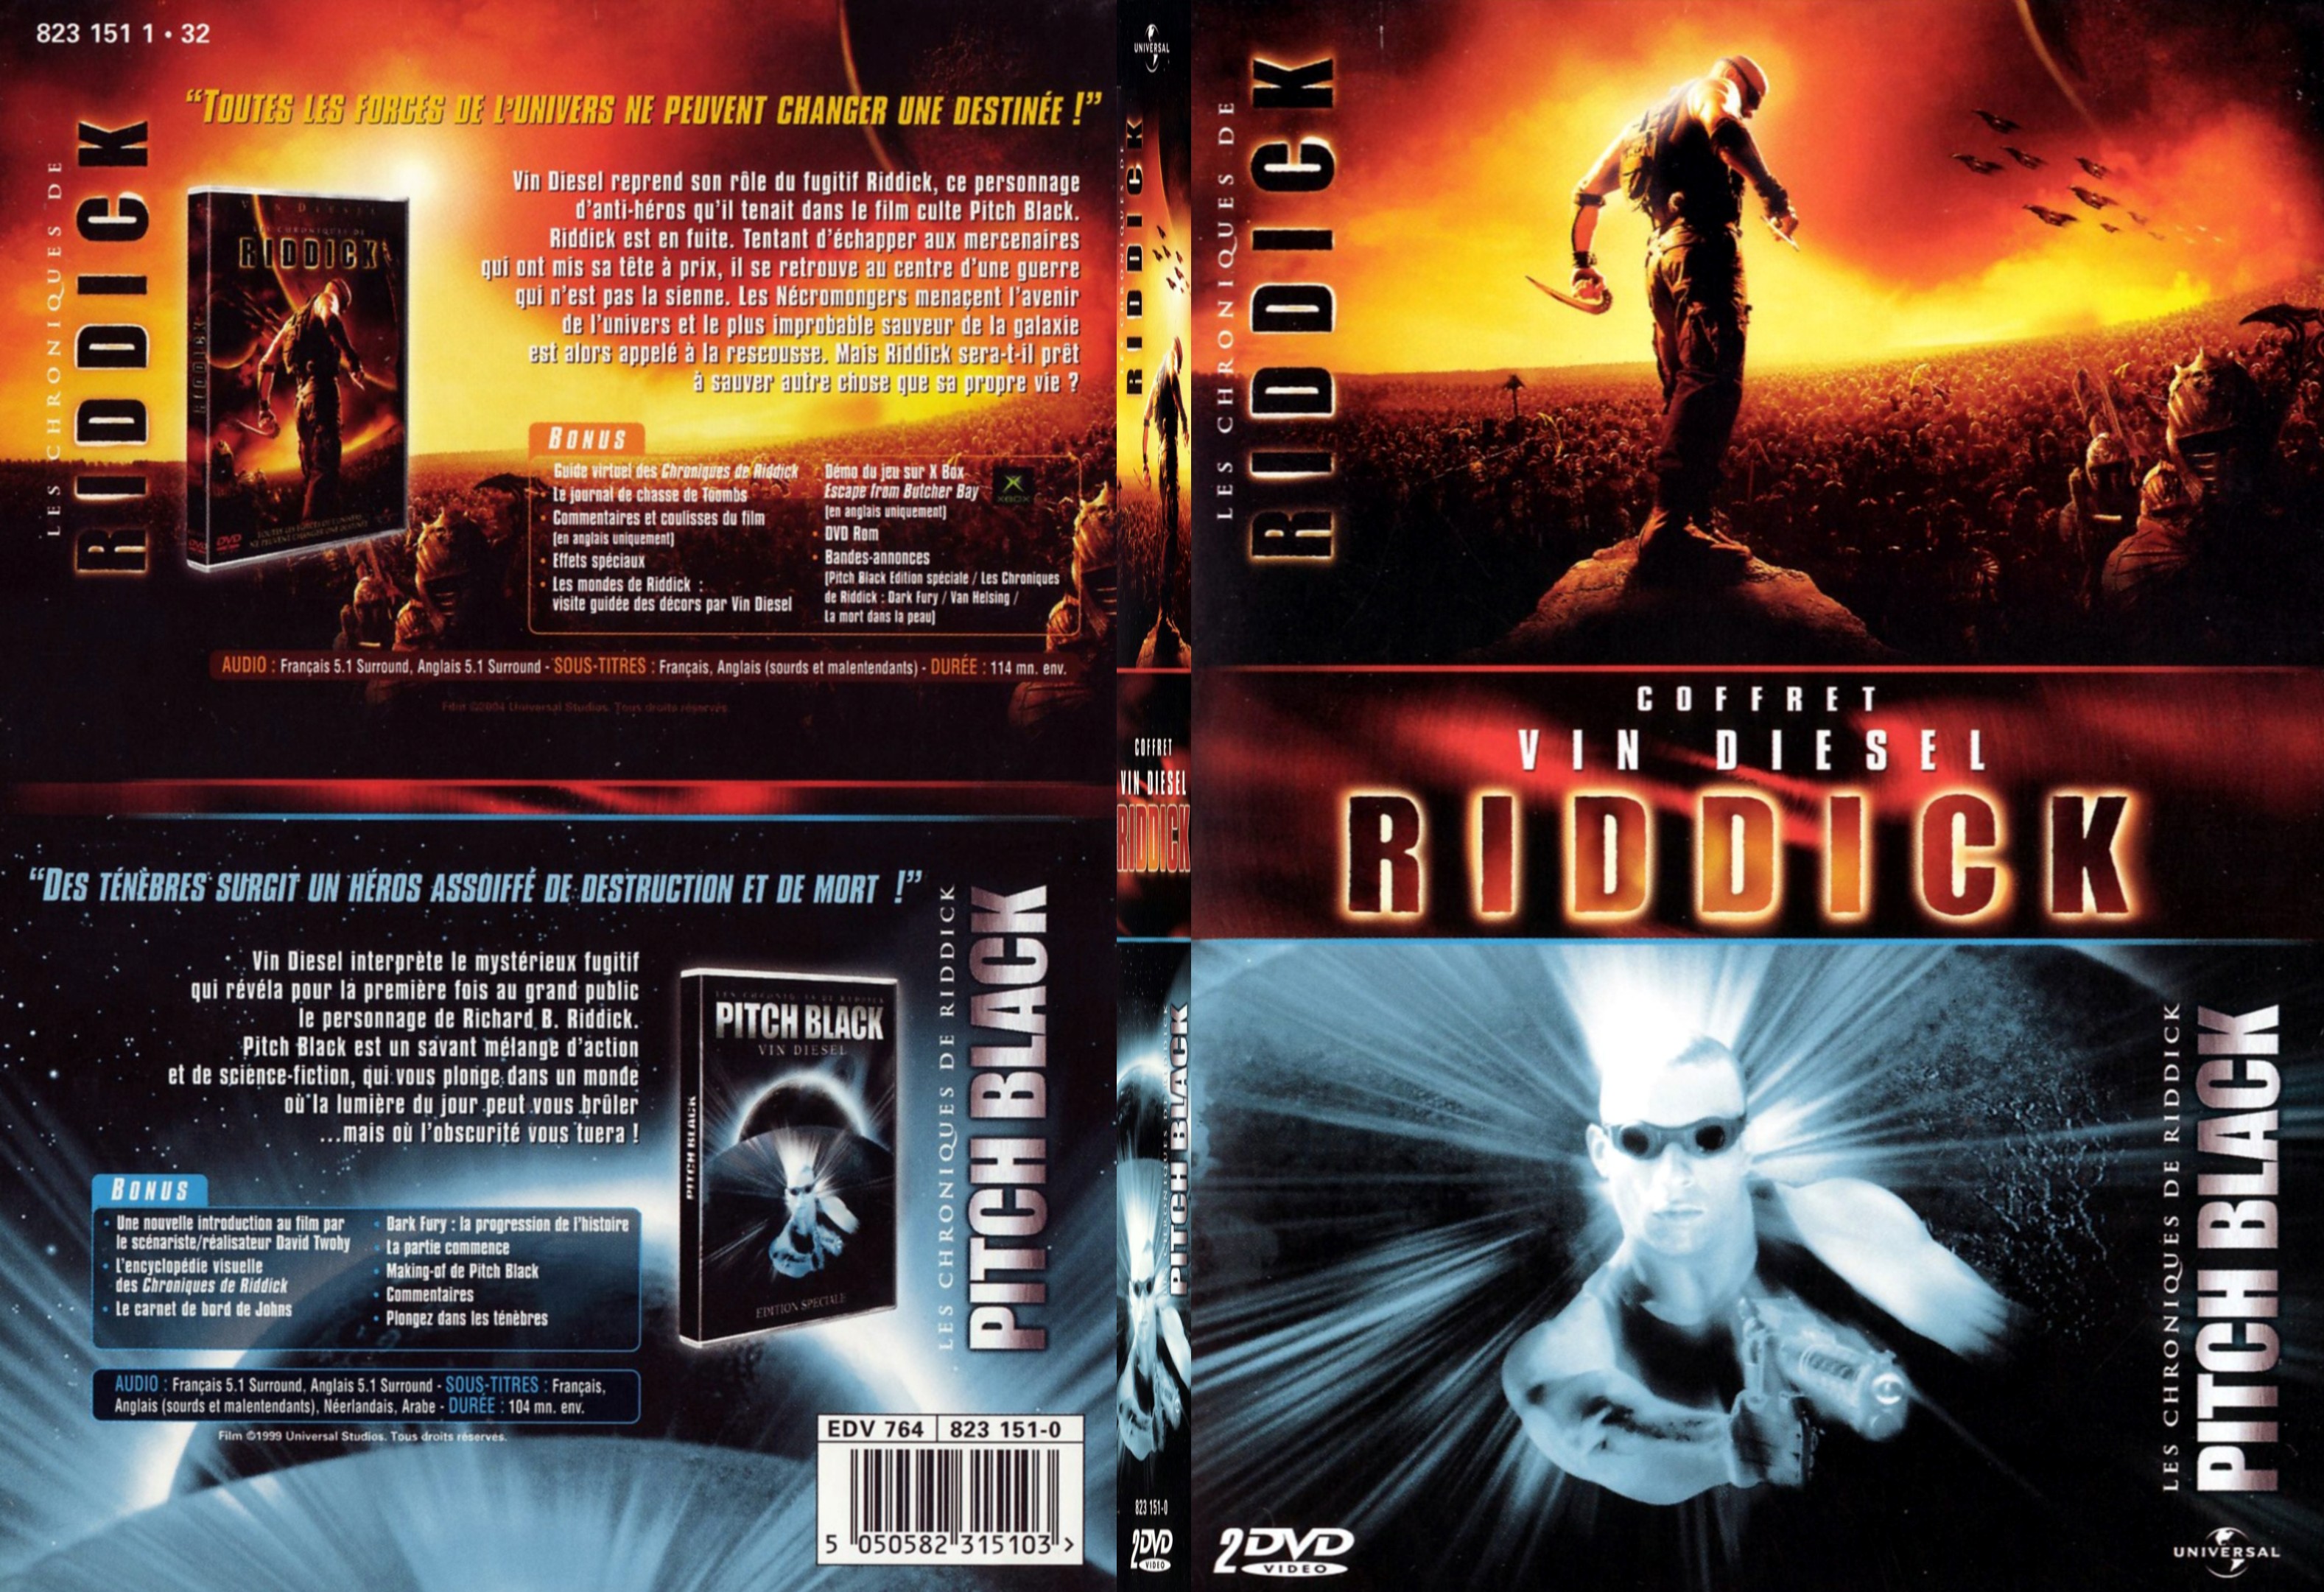 Jaquette DVD Pitch black + Les chroniques de Riddick - SLIM